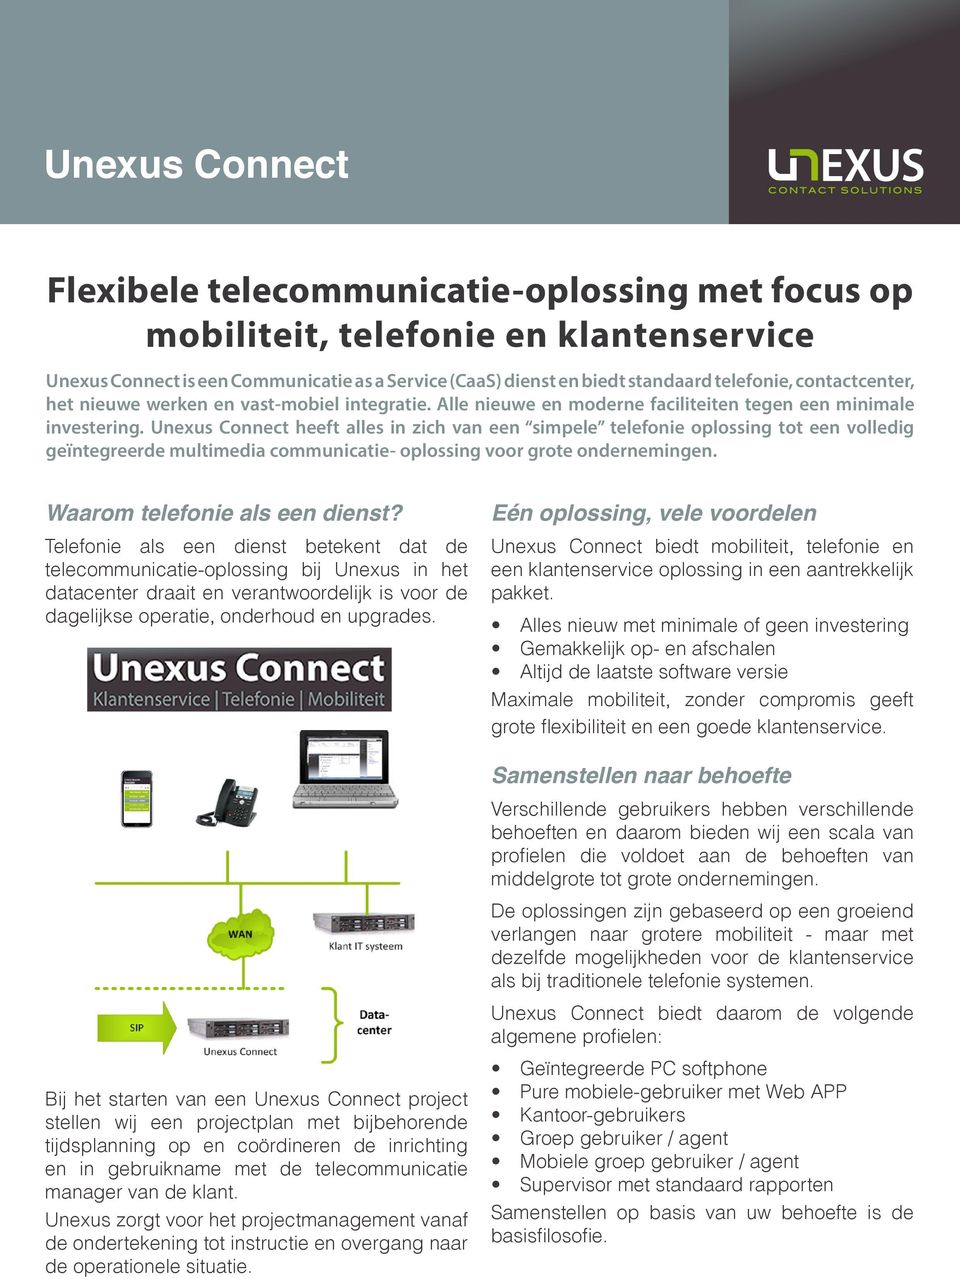 Unexus Connect heeft alles in zich van een simpele telefonie oplossing tot een volledig geïntegreerde multimedia communicatie- oplossing voor grote ondernemingen. Waarom telefonie als een dienst?